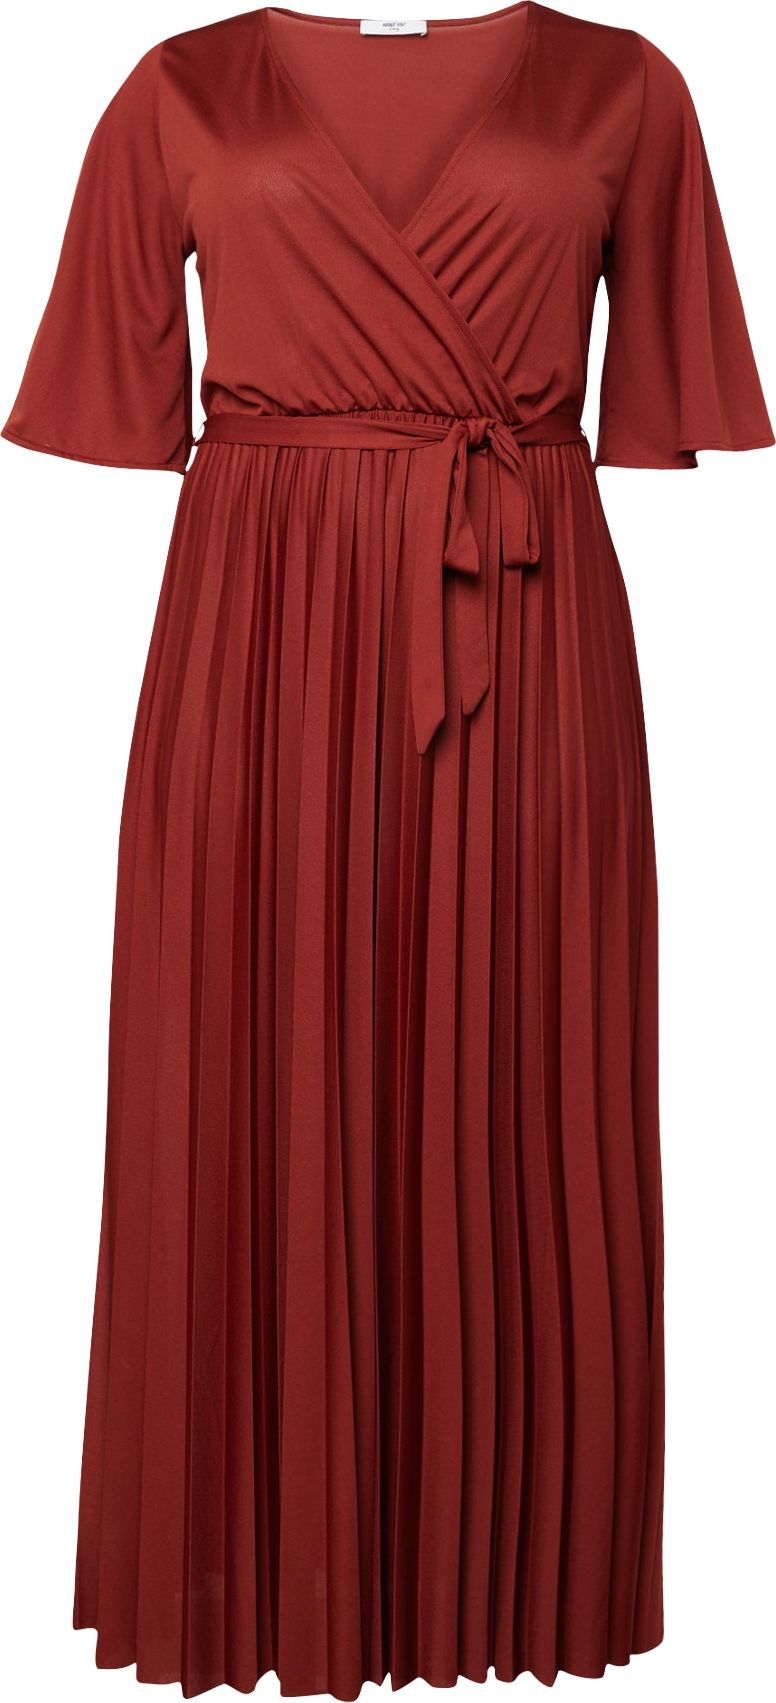 Společenské šaty 'Gemma' ABOUT YOU Curvy rezavě červená